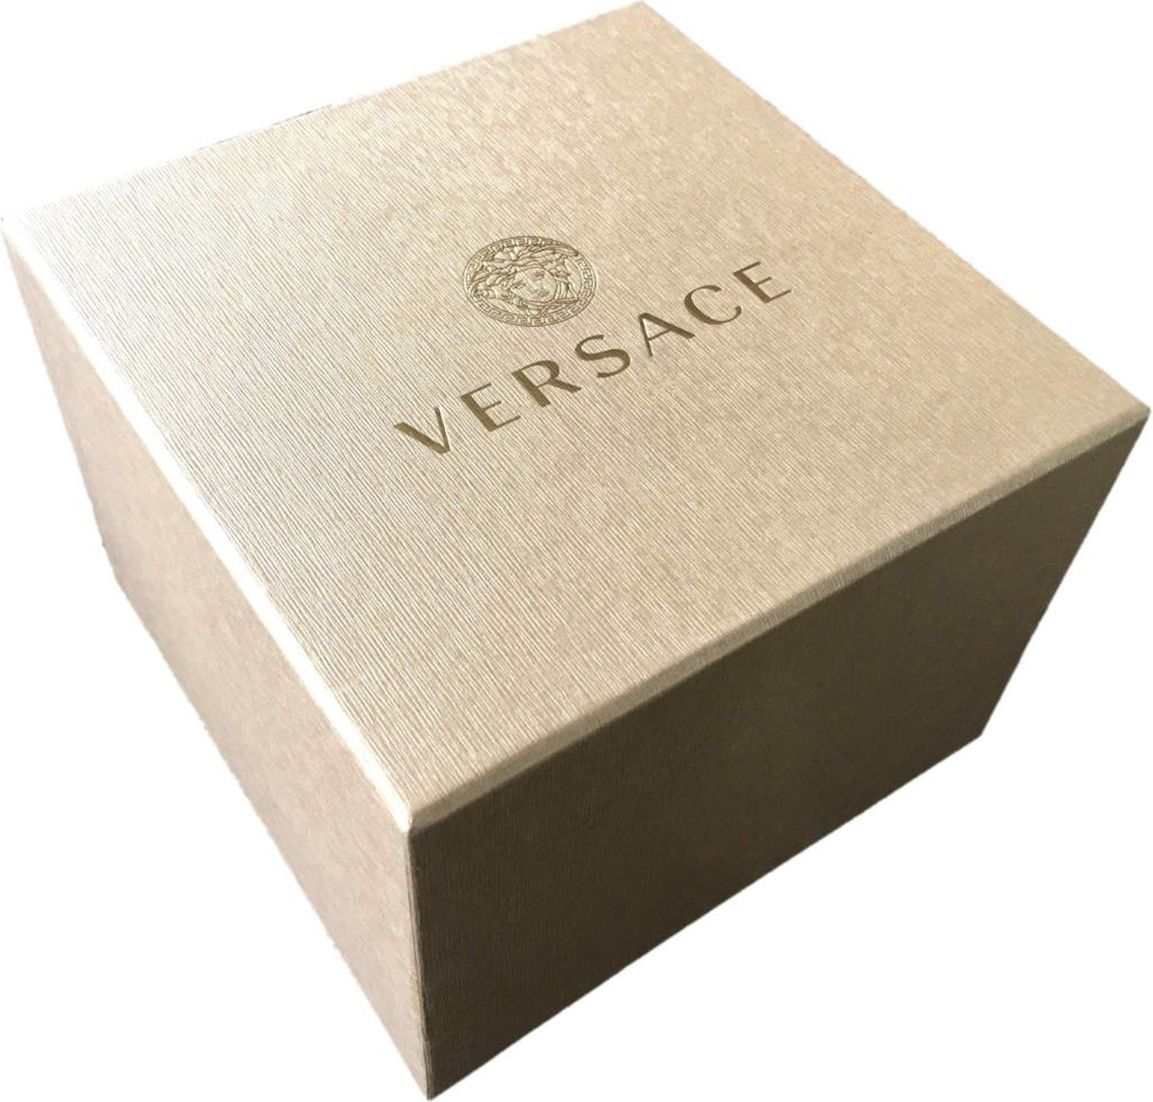 Versace VERD00118 Palazzo Empire heren horloge 43 mm Blauw